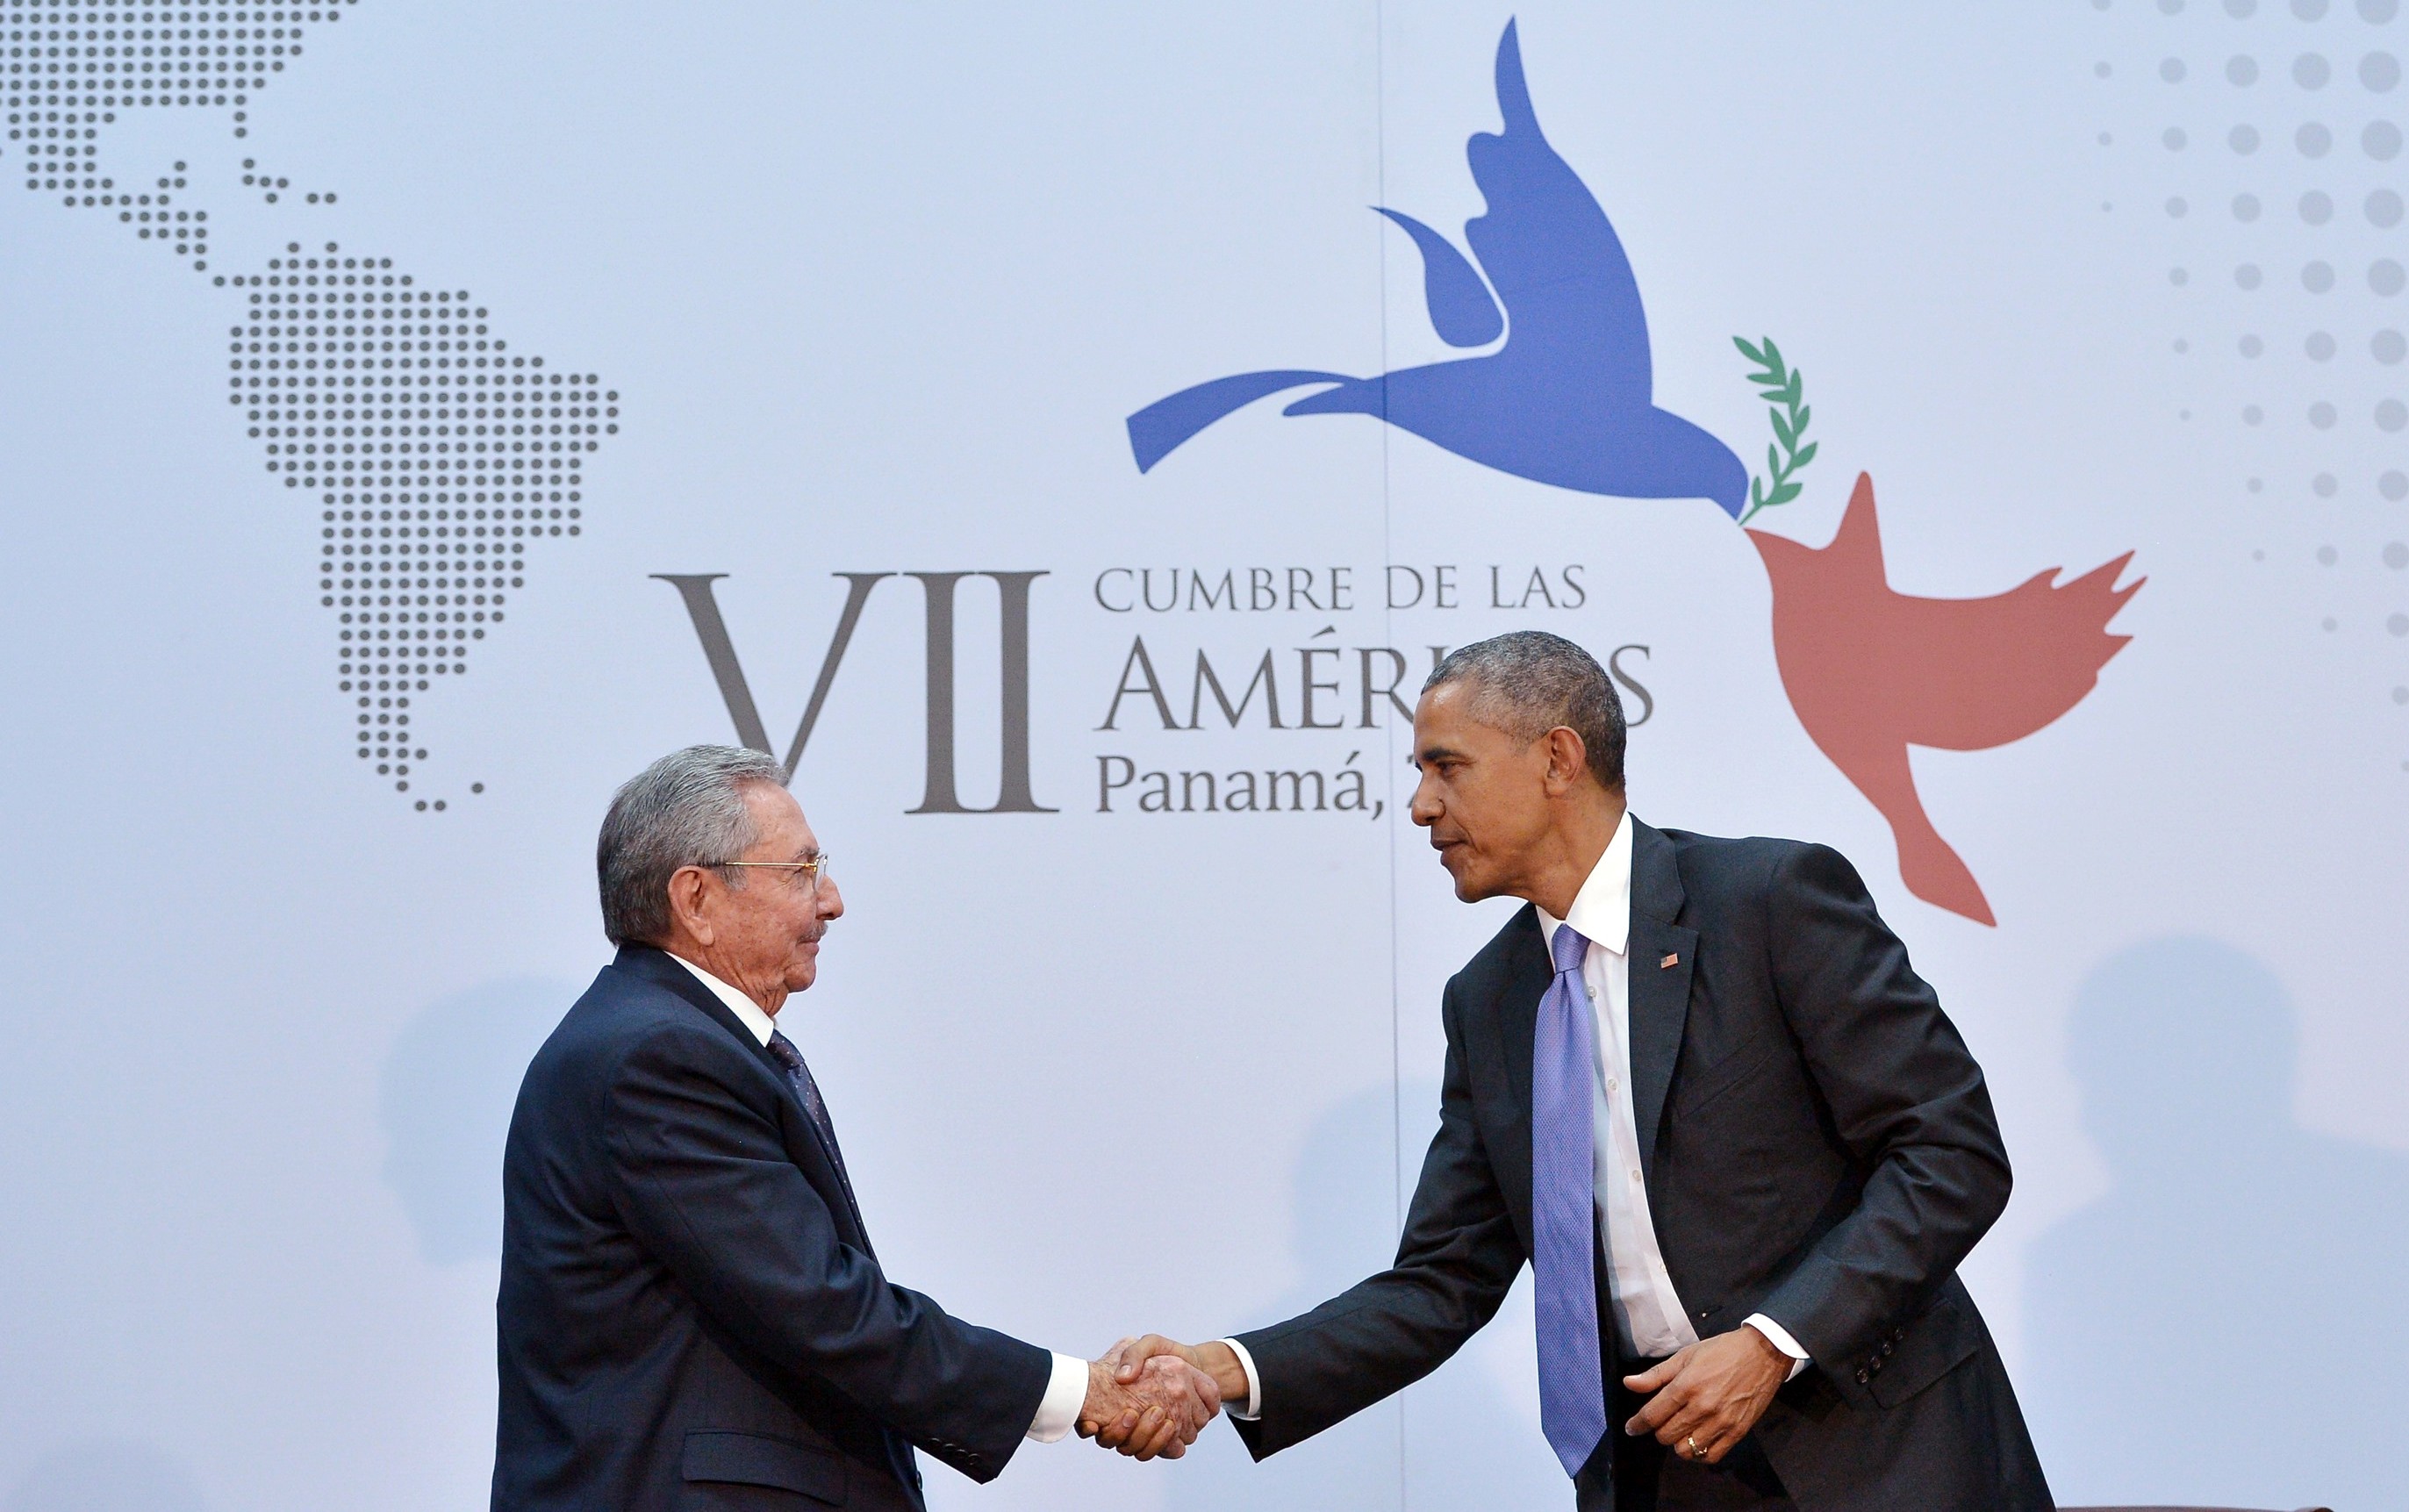  Obama pide retirar a Cuba de lista negra